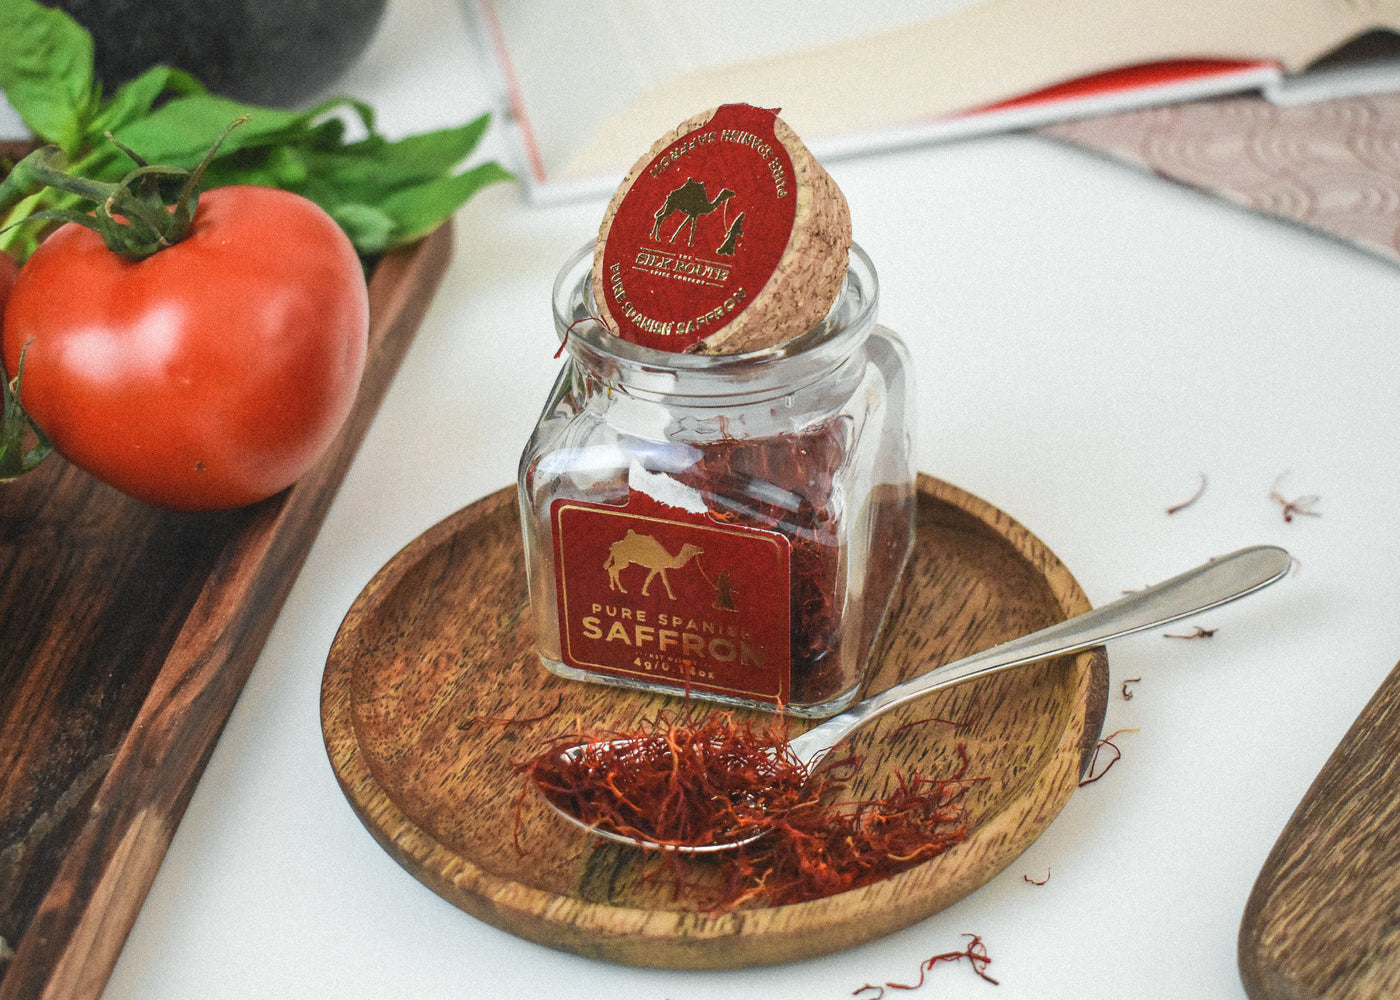 100% Authentic Spanish Saffron Threads Glass Jar - 4g